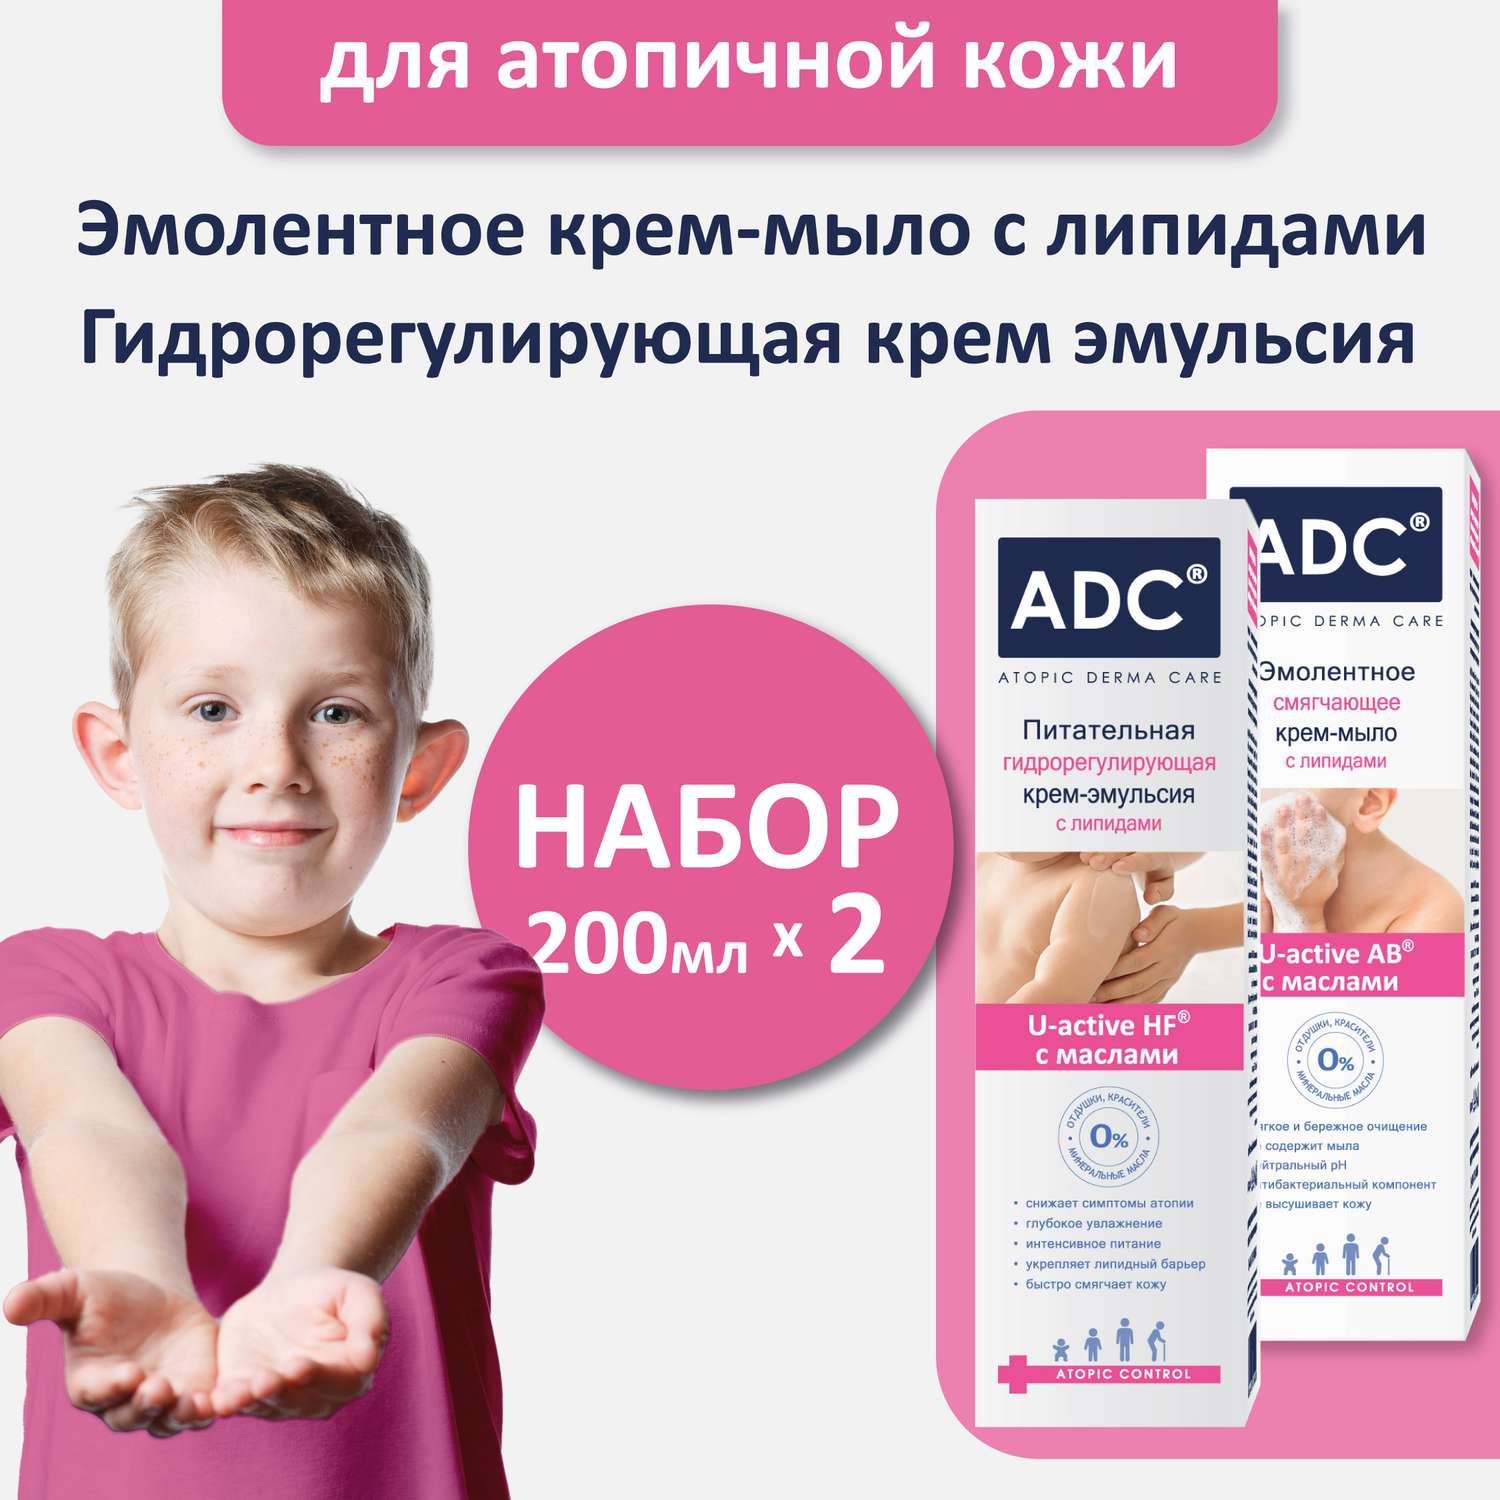 Крем-мыло и Крем-эмульсия ADC 2шт по 200мл Набор для атопичной кожи - фото 1